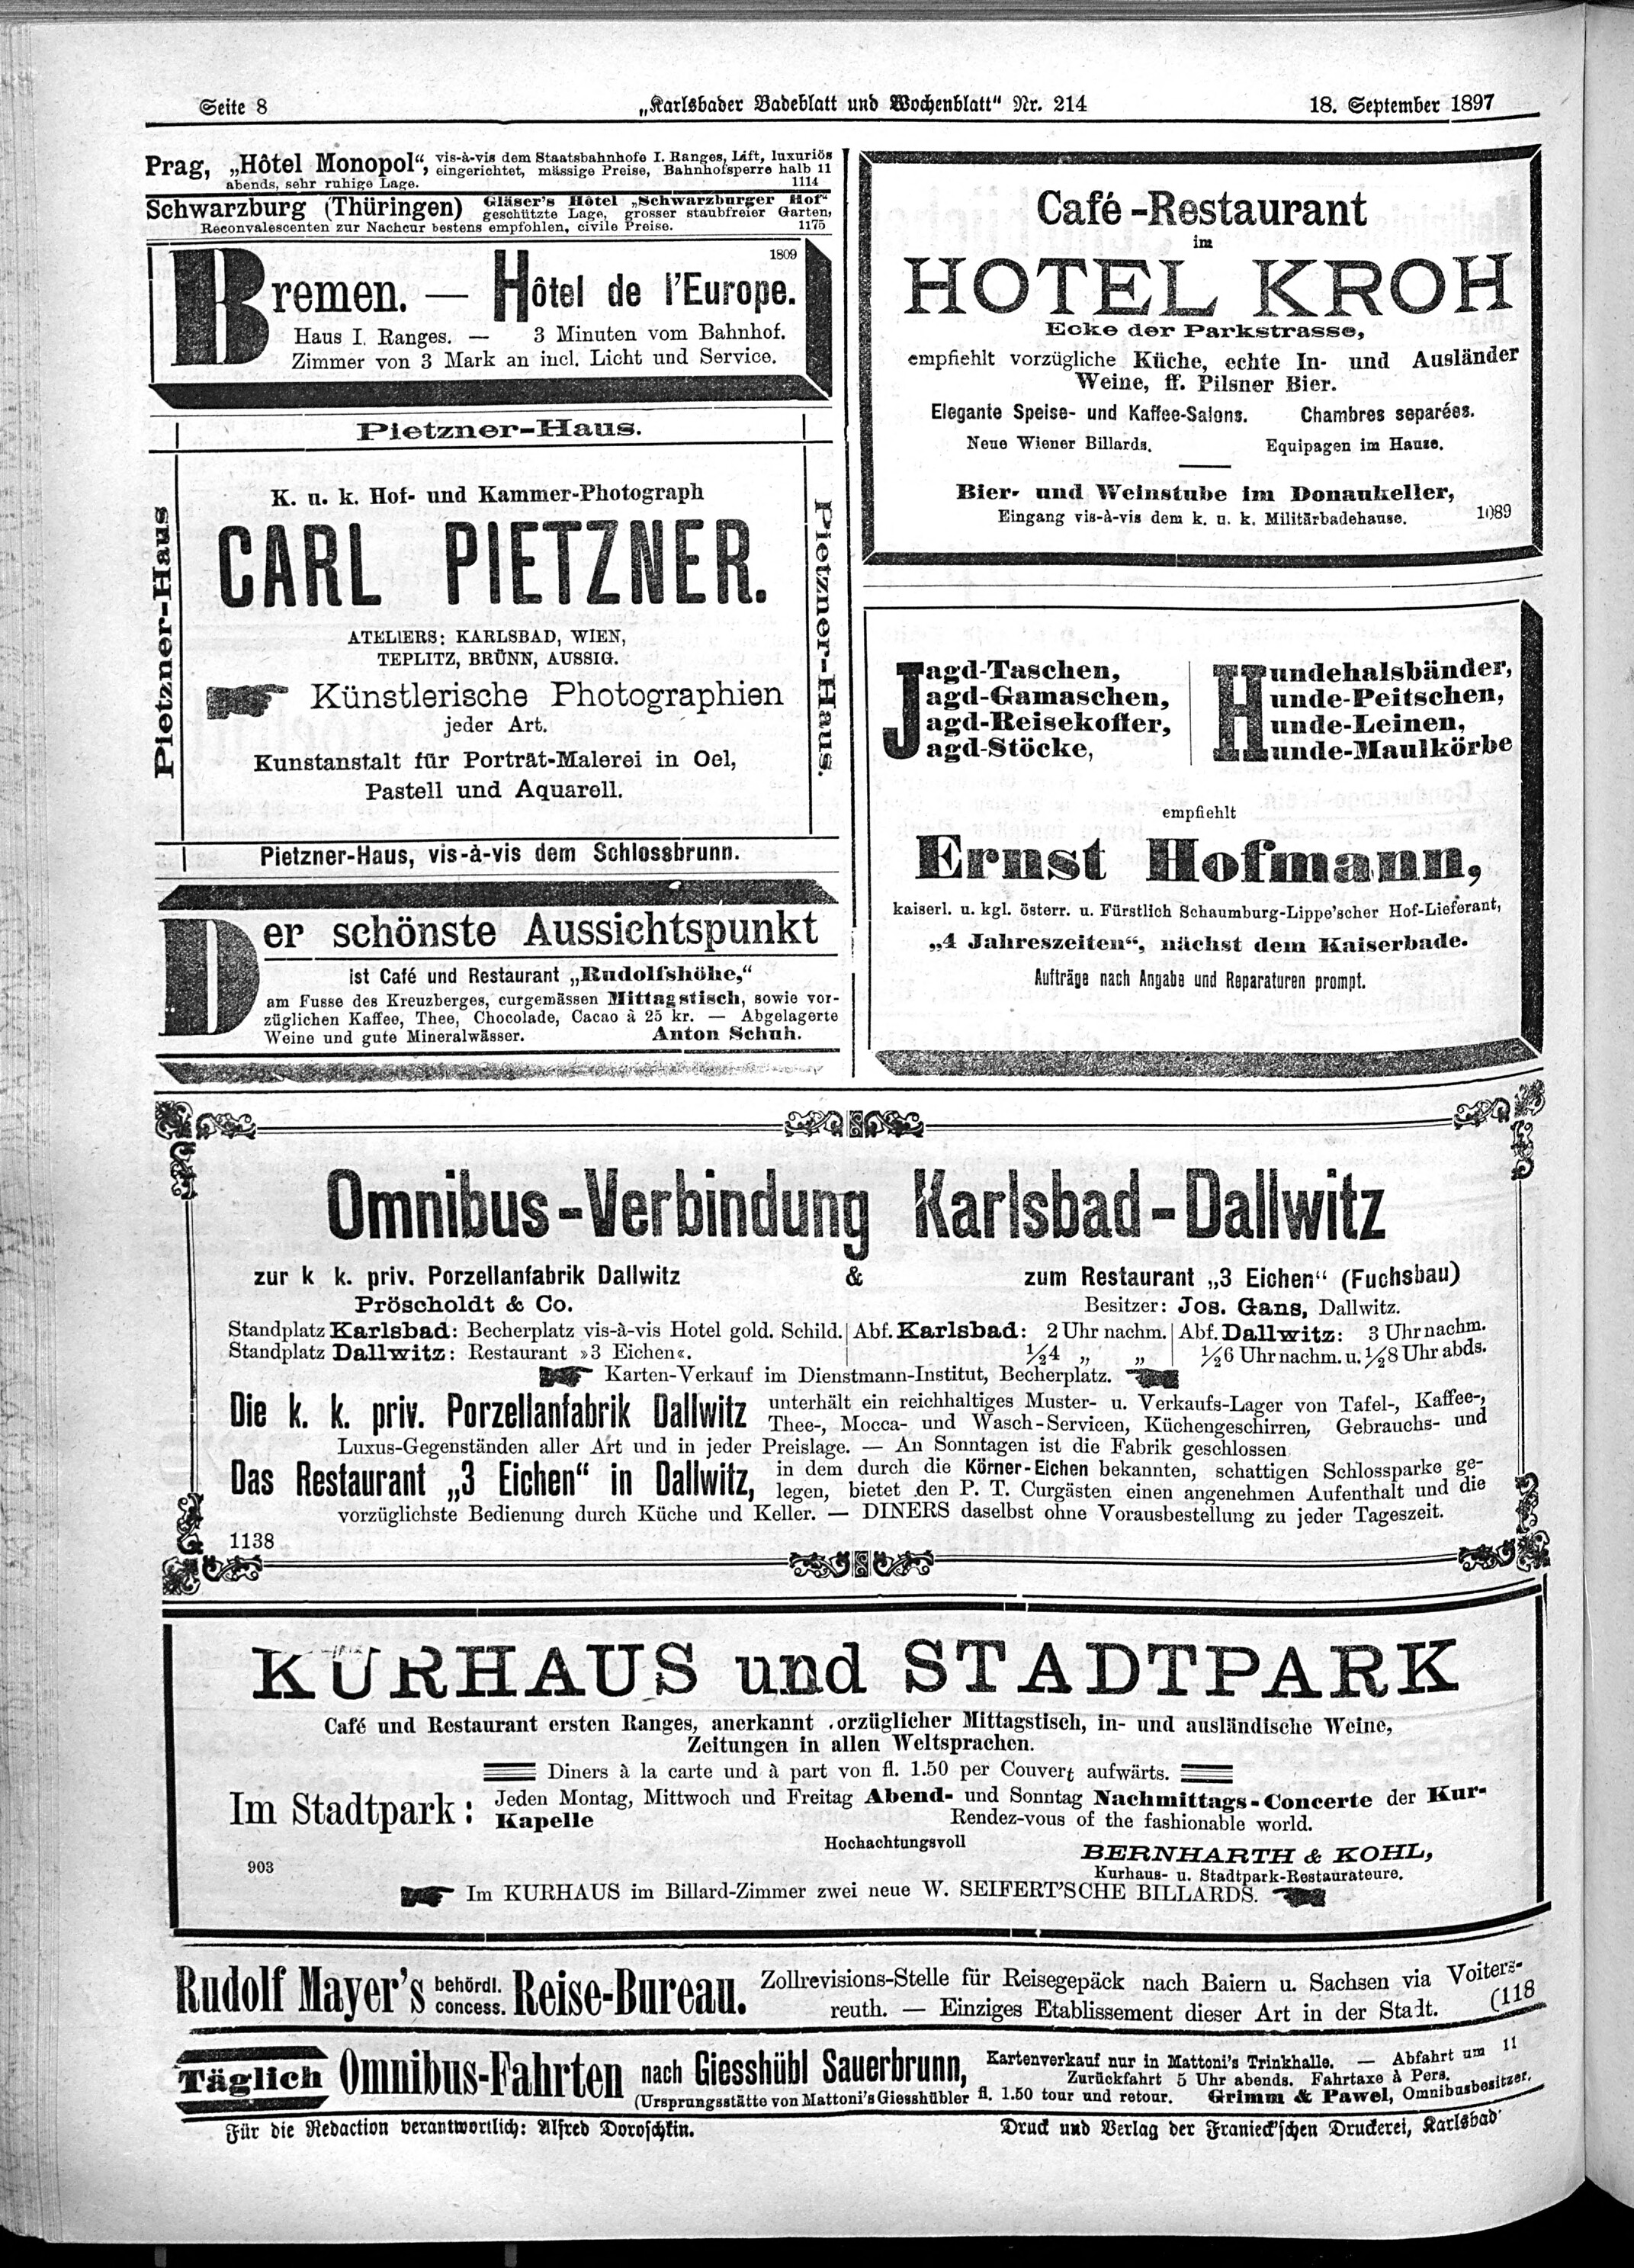 8. karlsbader-badeblatt-1897-09-18-n214_3830